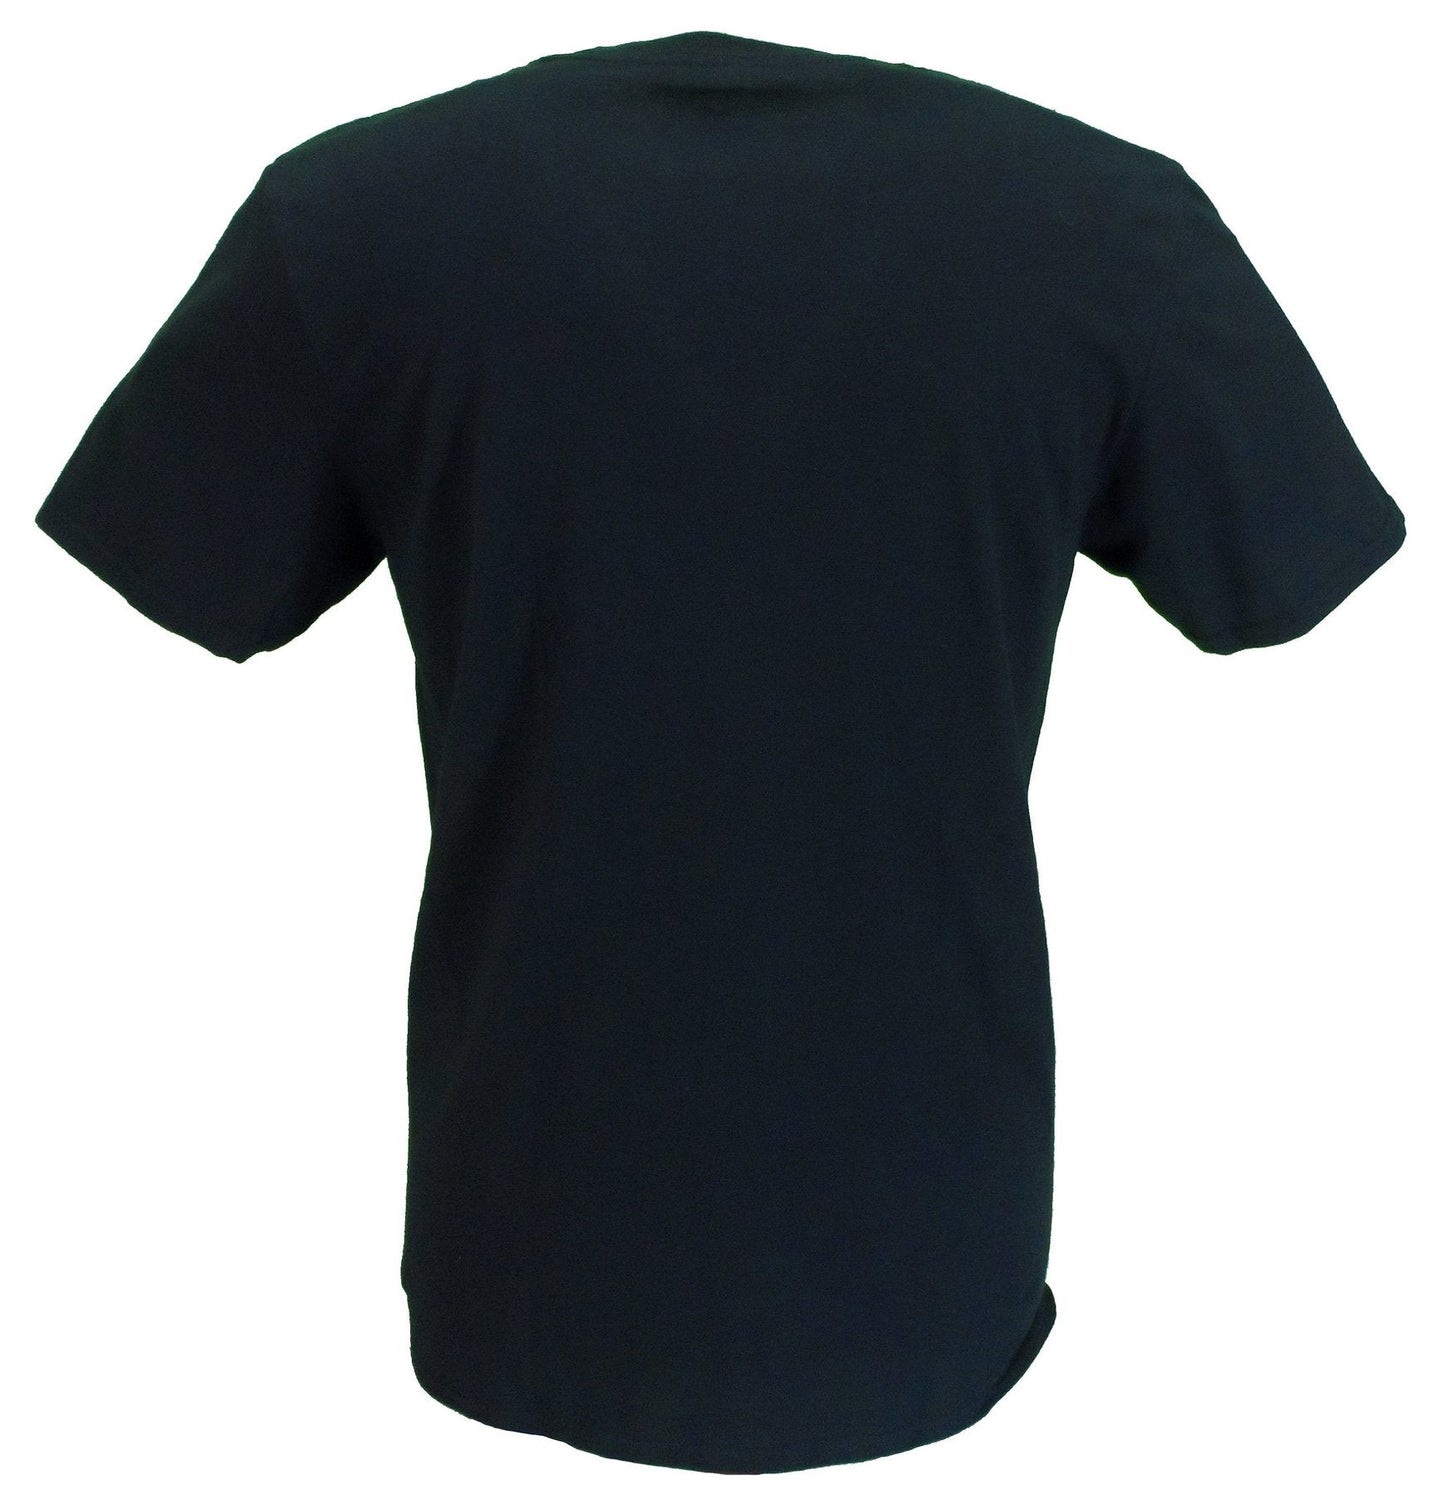 Camiseta oficial negra con logo apilado de t rex bolan para hombre